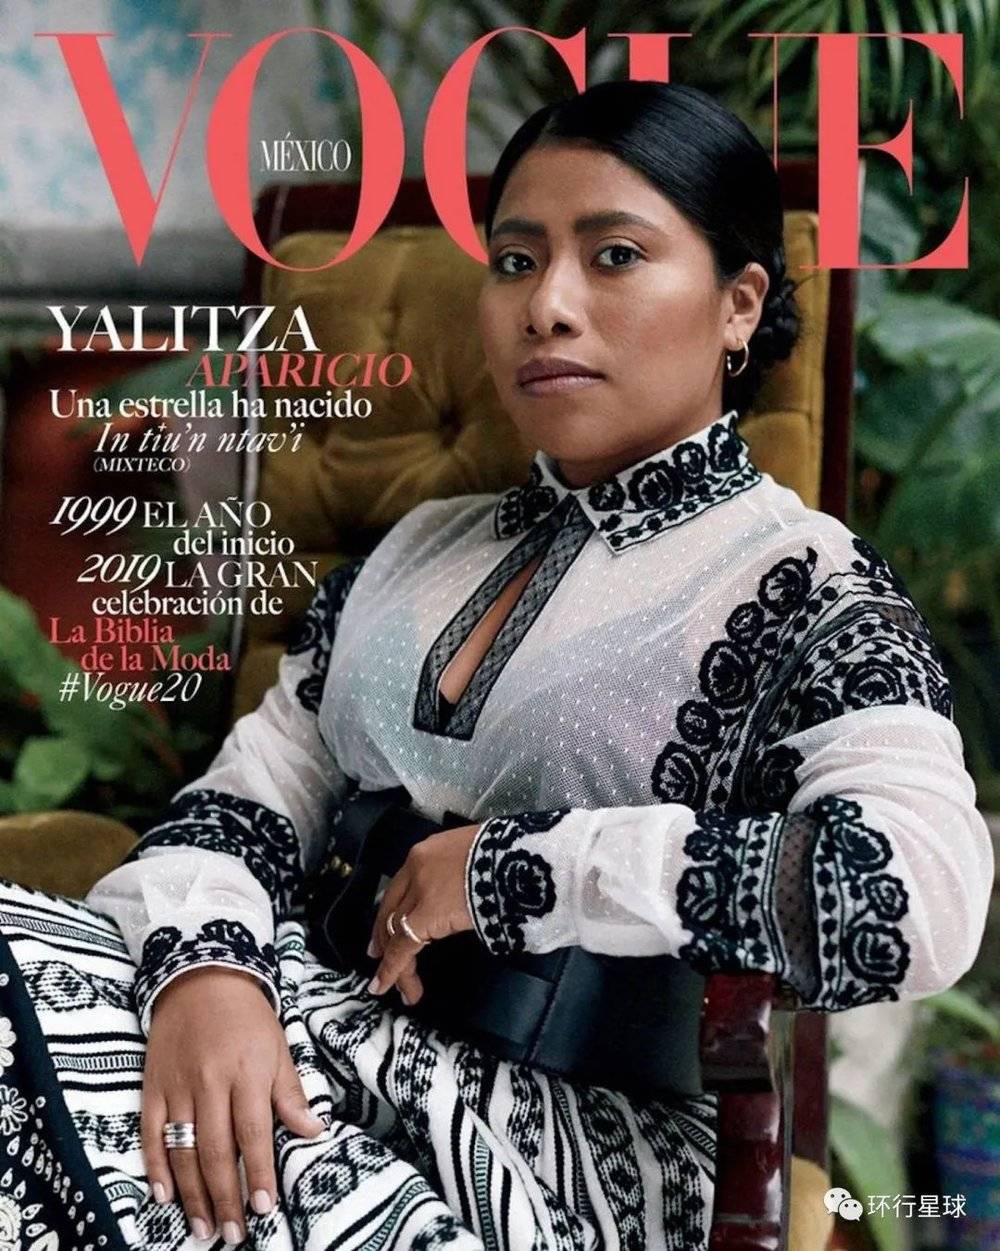 耶莉莎2019年1月登上墨西哥《时尚》杂志的封面。<br>